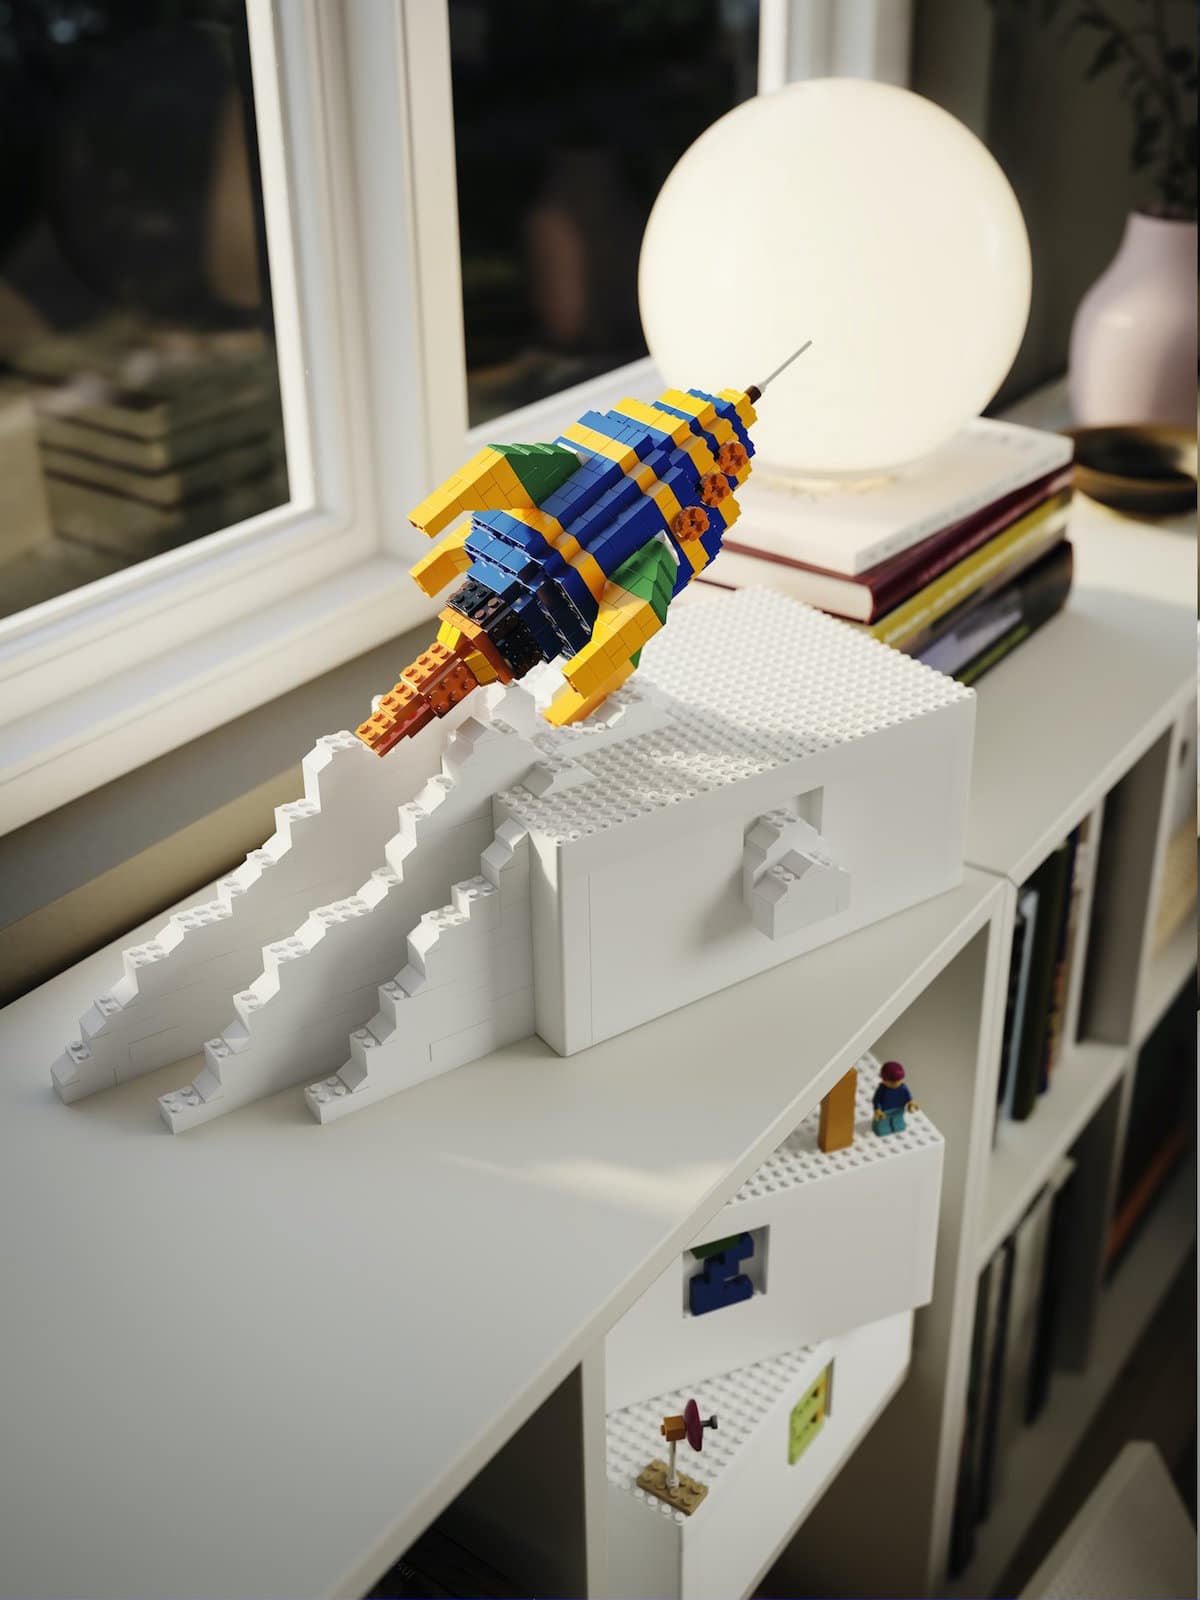 Kollektion Bygglek von Ikea und Lego, hier mit Rakete